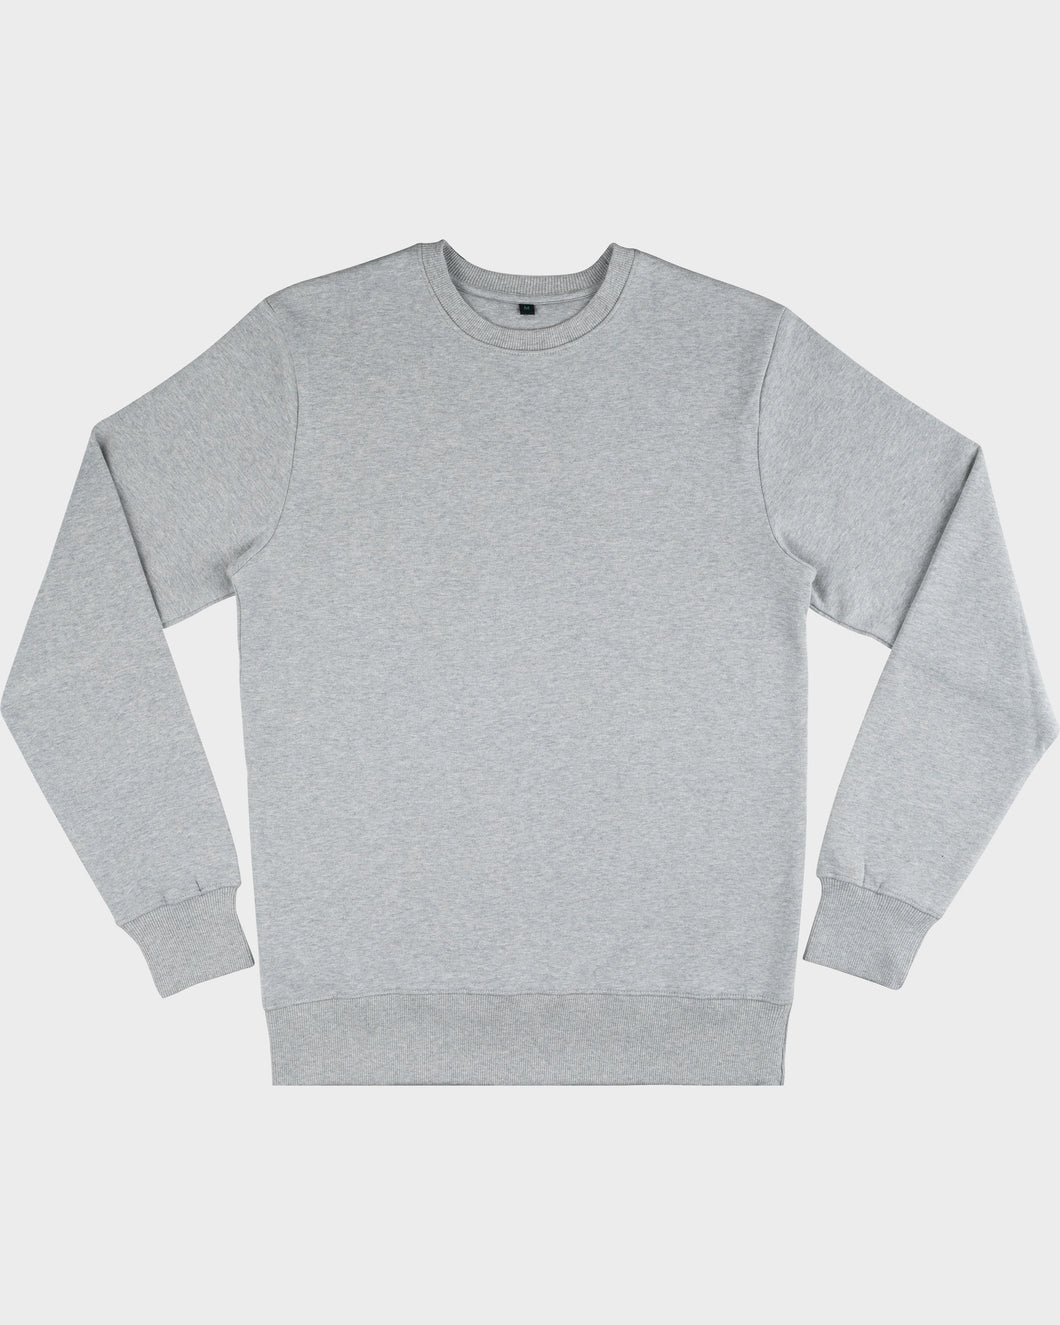 Unisex Sweatshirt - EP62